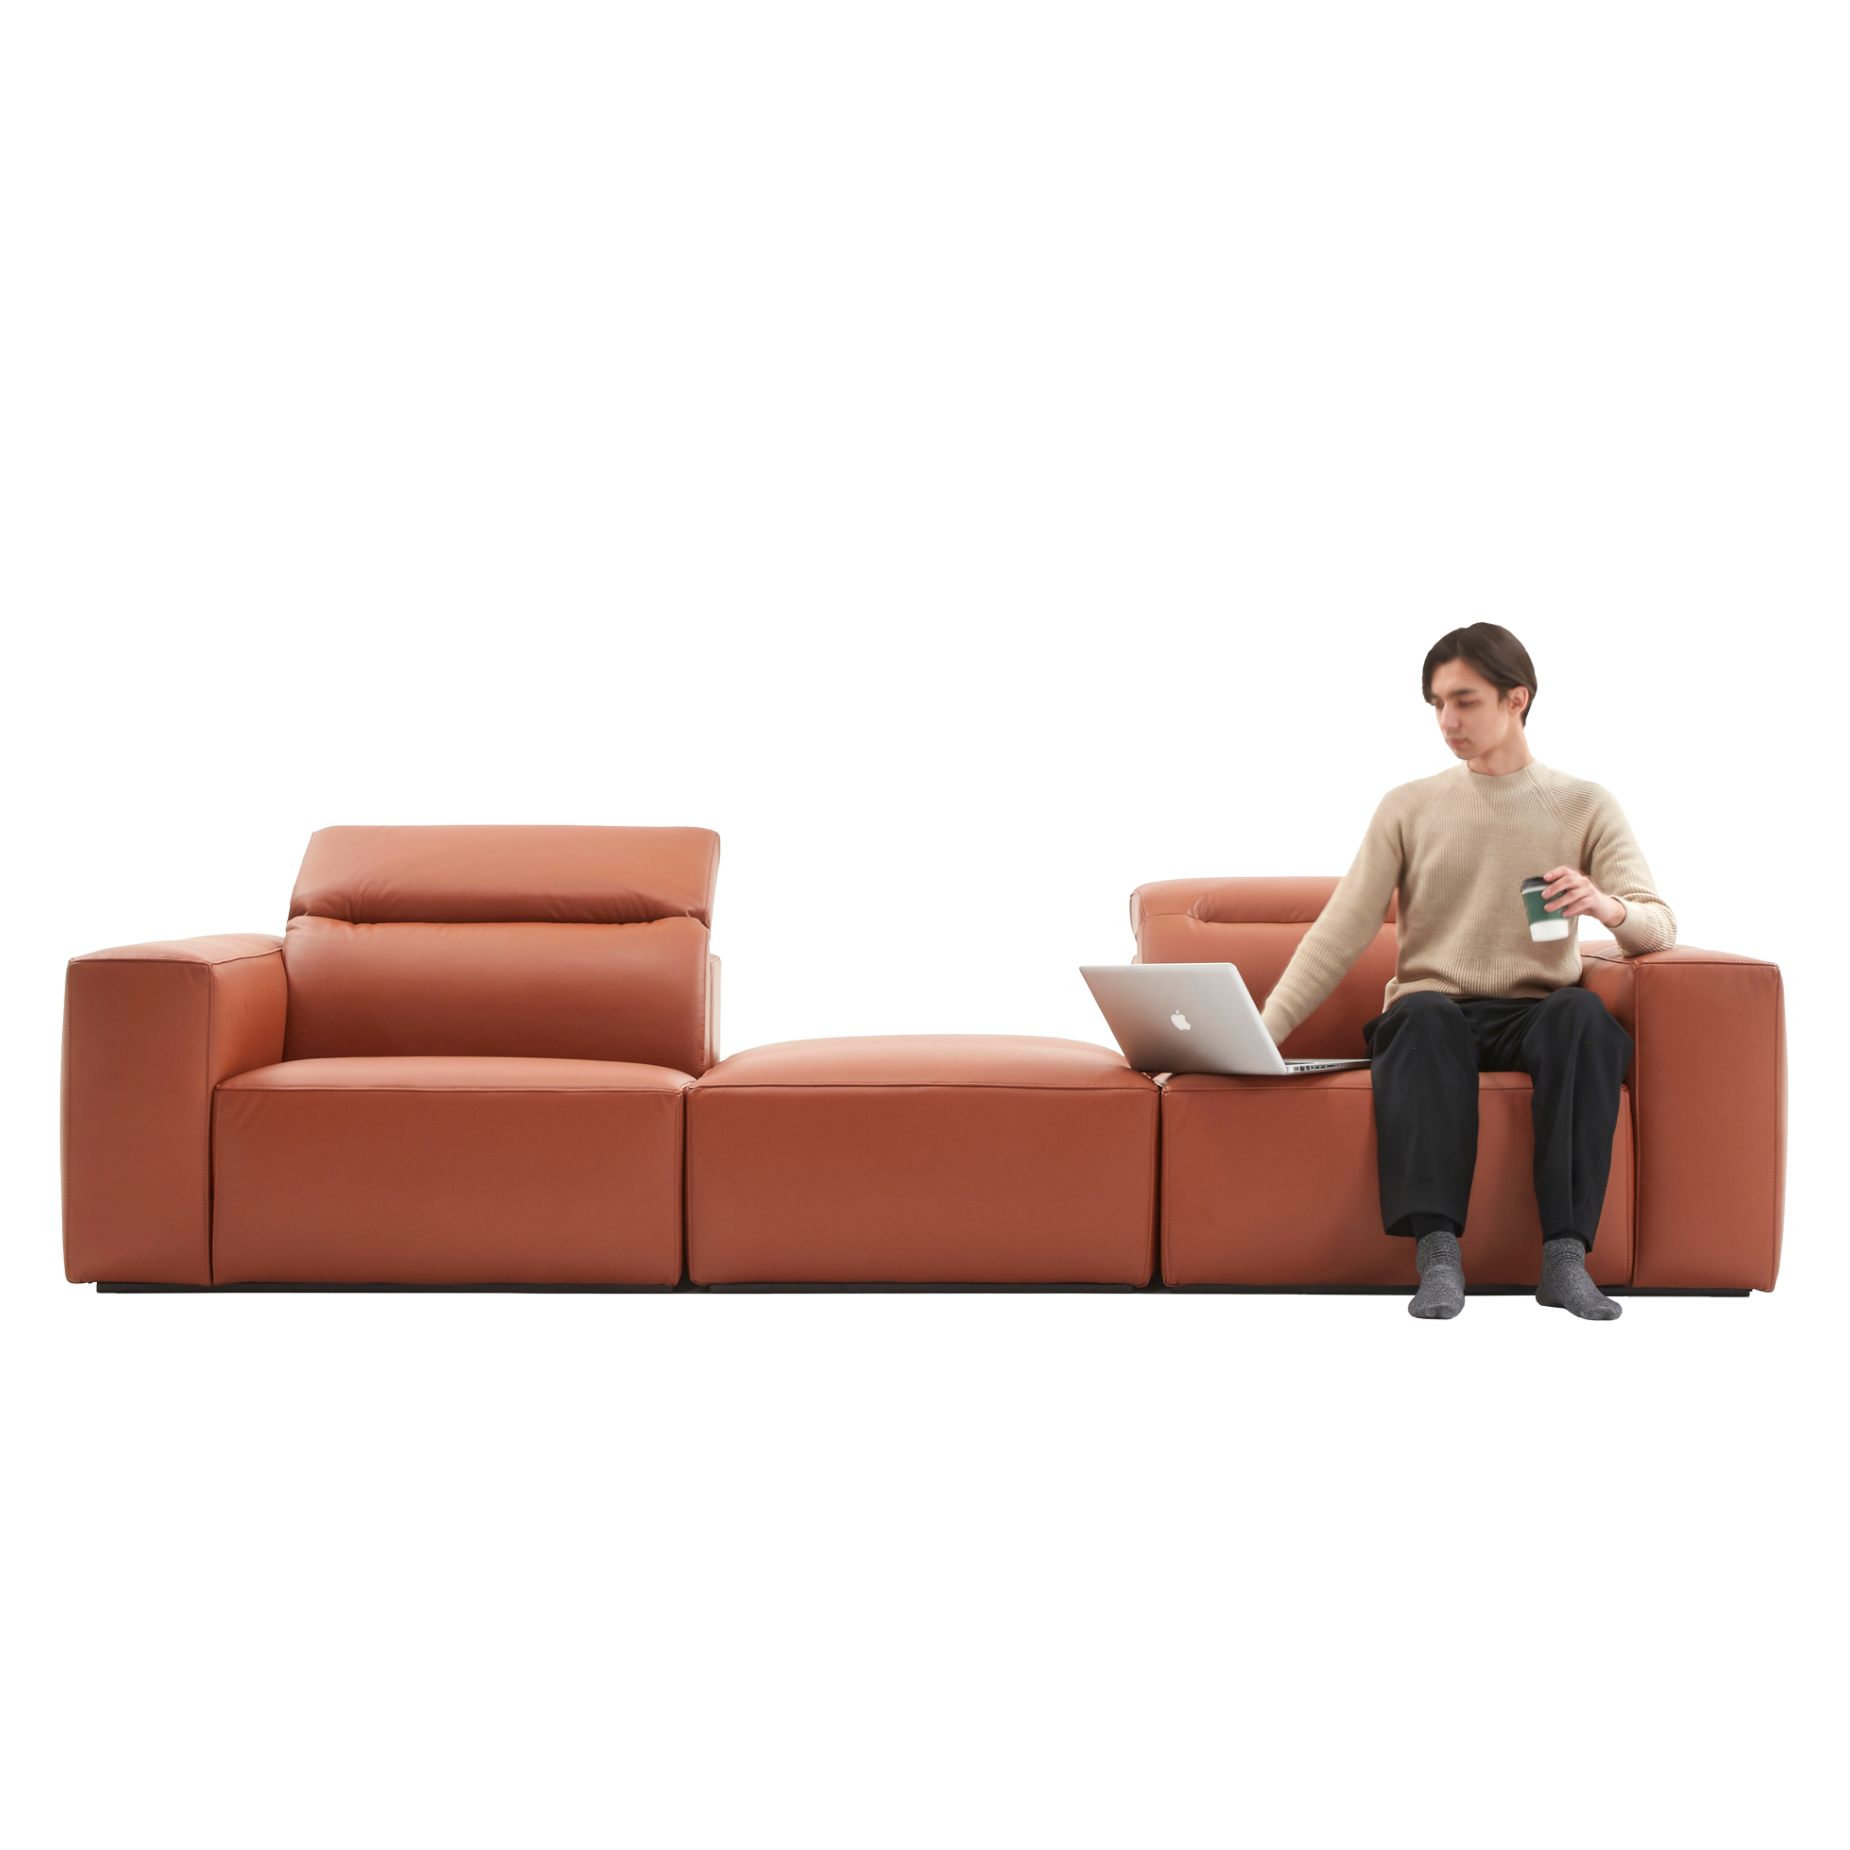 (주)도이치[4주 주문제작]              DOICH ®    PEN1 modular sofa 도이치 펜1 모듈 3인소파+스툴  /(올가죽 사양/ 7개 가죽컬렉션 선택)